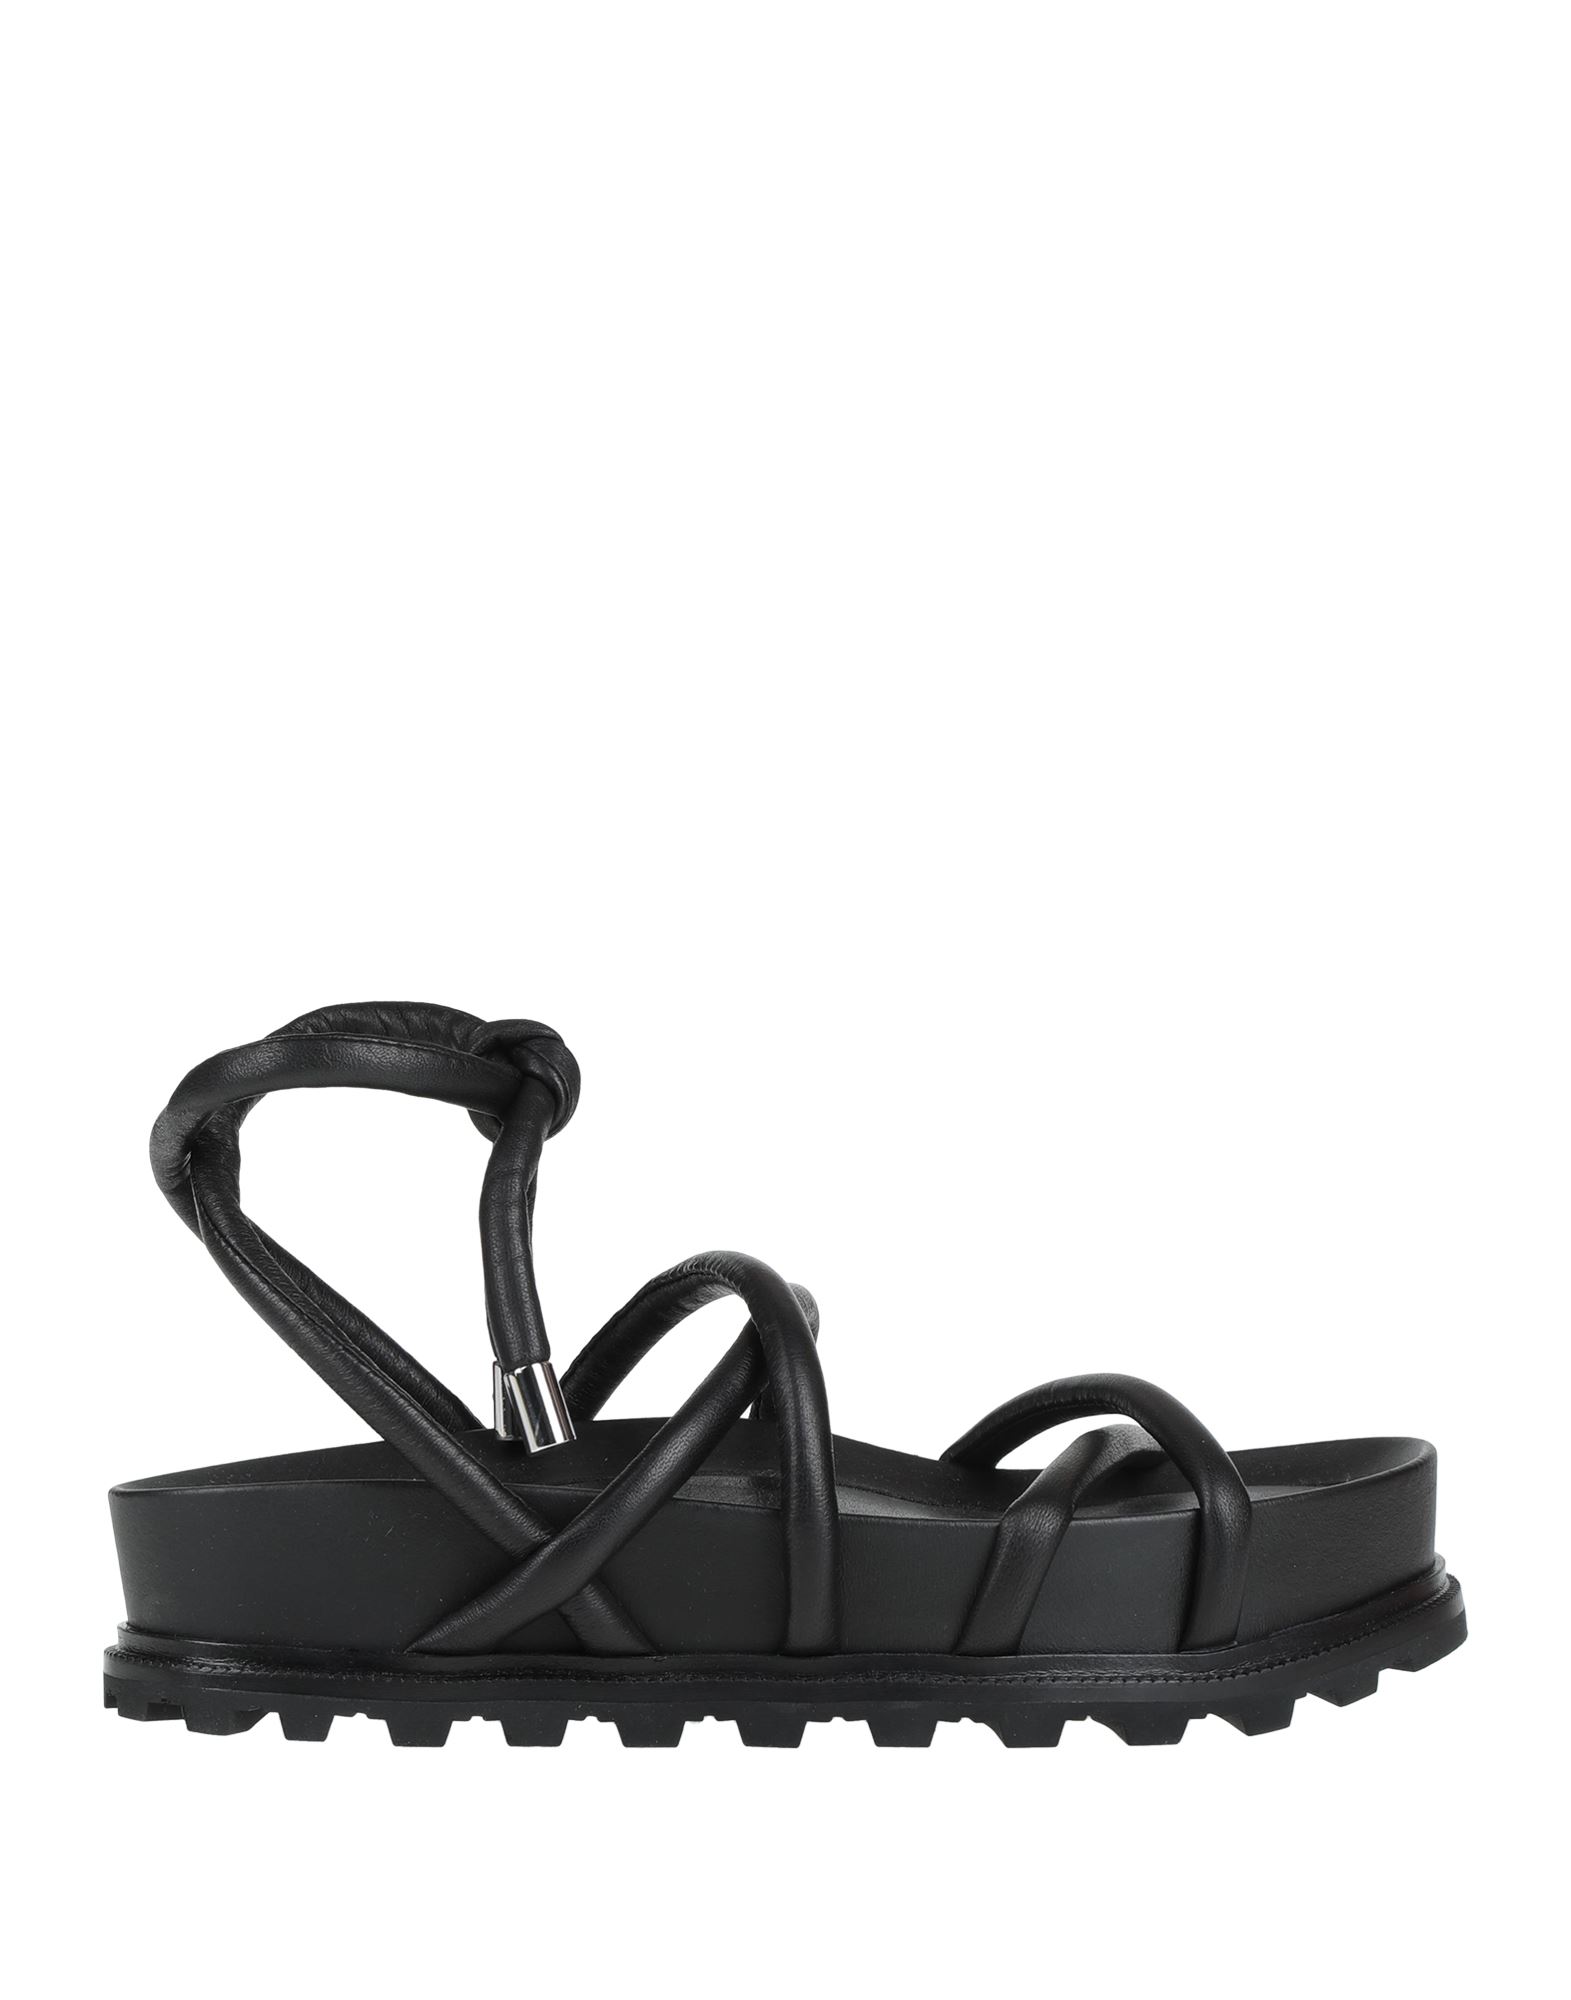 Vic Matie Sandals In Black | ModeSens